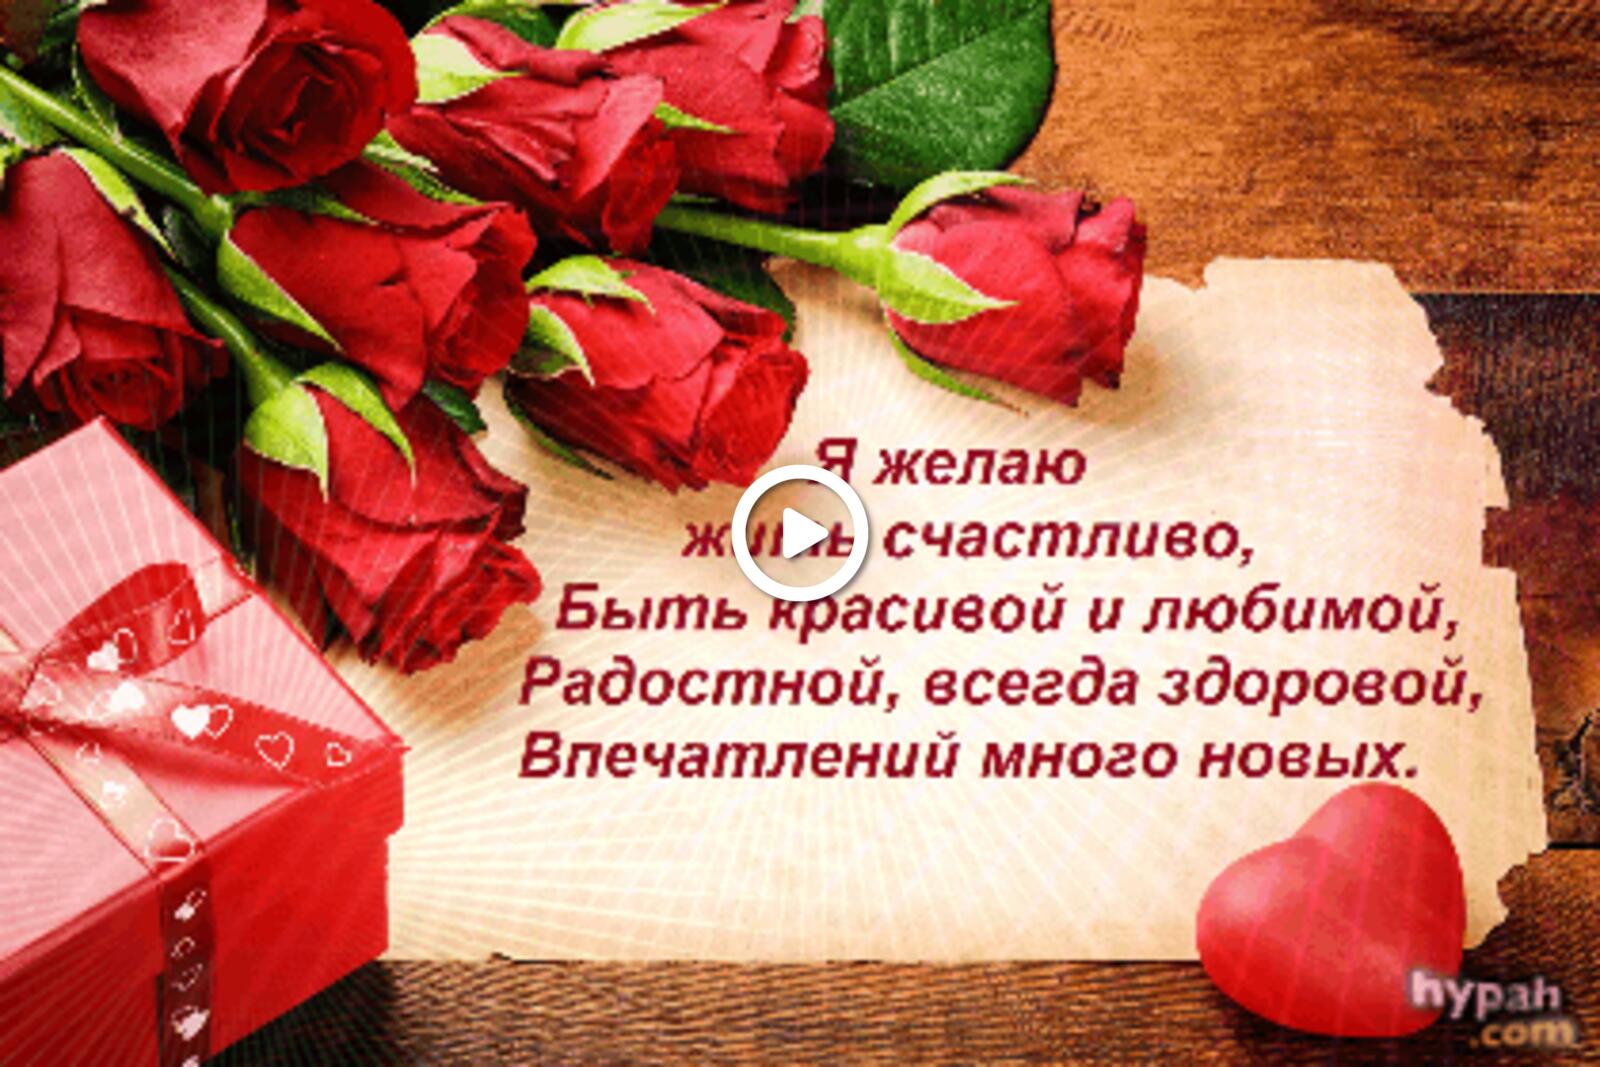 一张以红玫瑰 诗词 我希望从此过上幸福的生活为主题的明信片